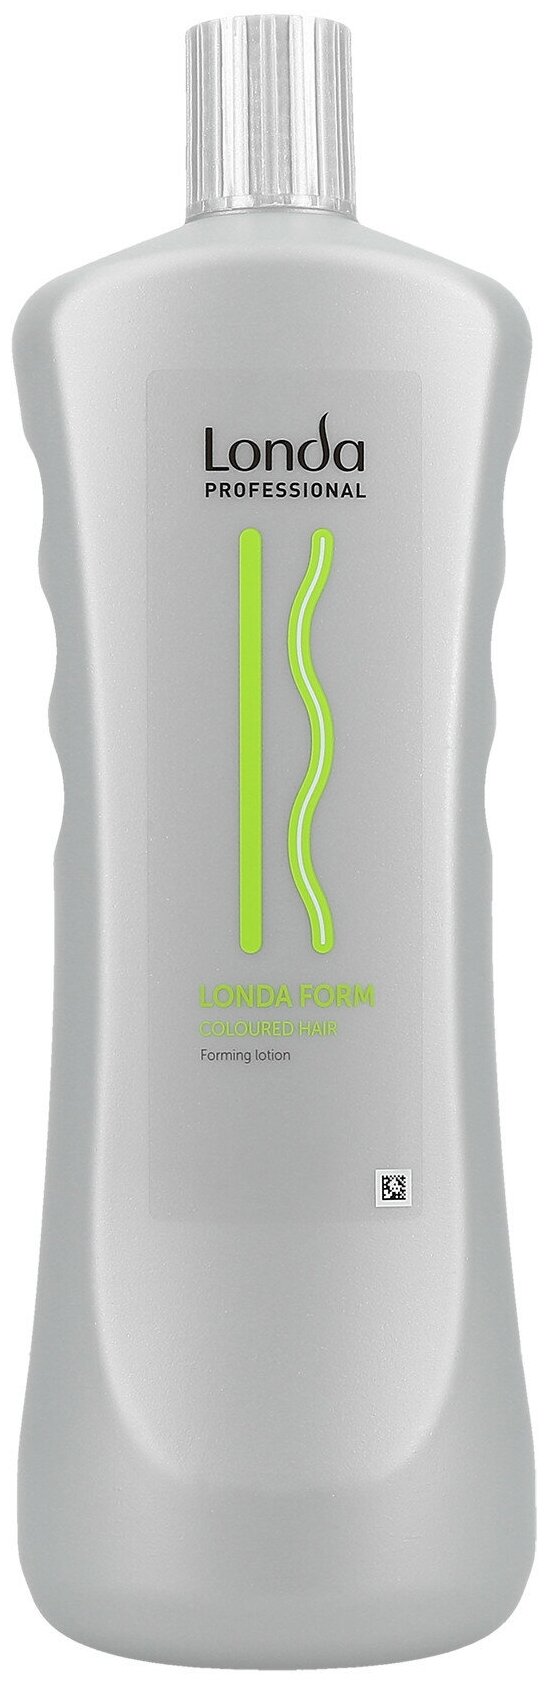 Londa Professional лосьон для долговременной укладки окрашенных волос Form C, 1000 мл